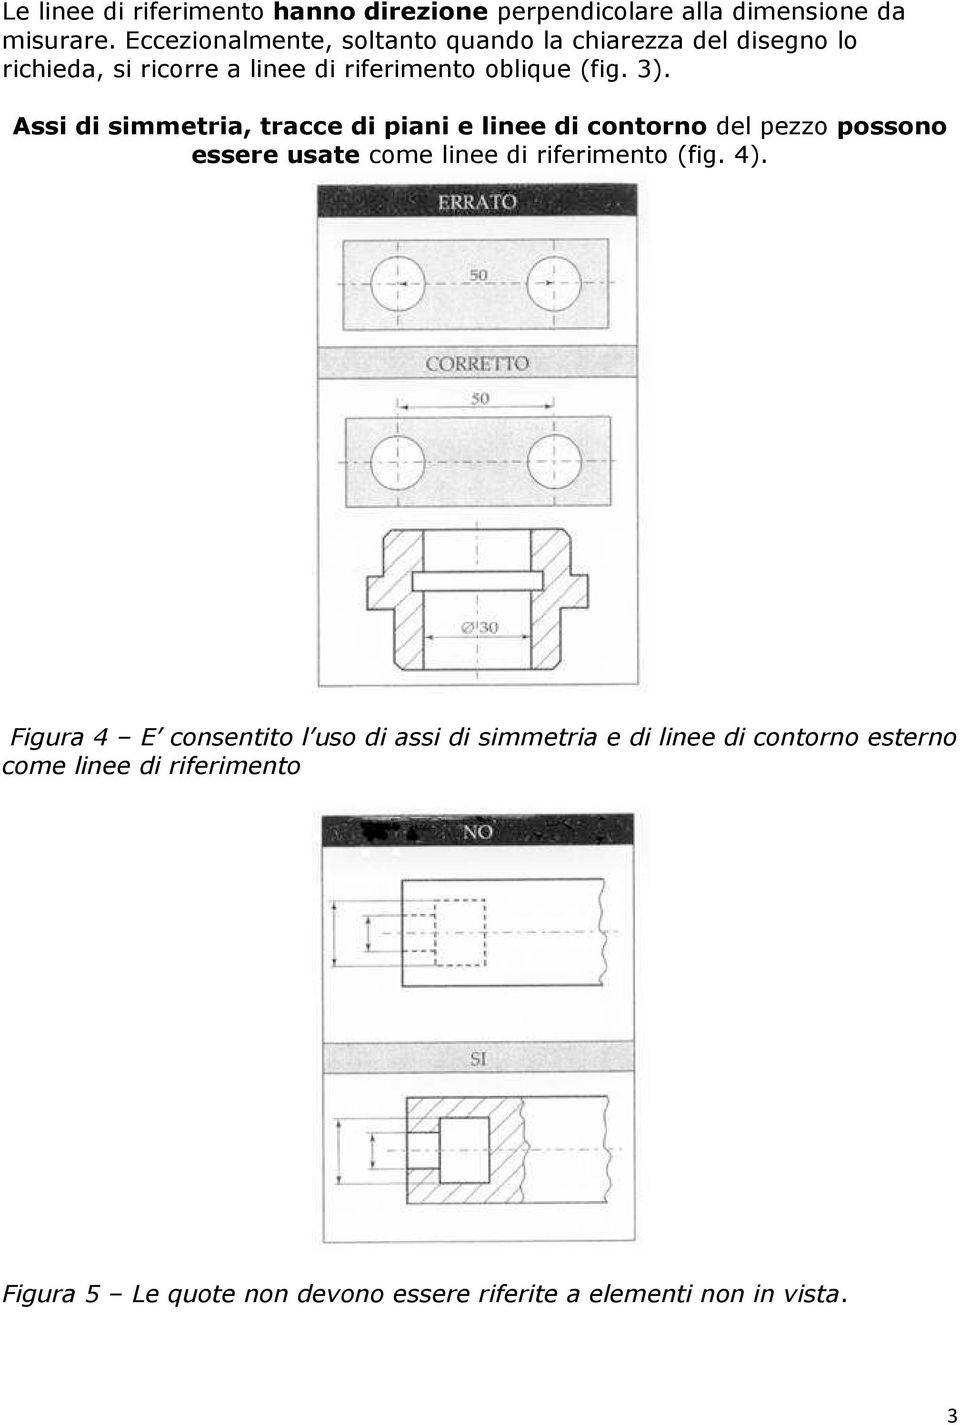 Assi di simmetria, tracce di piani e linee di contorno del pezzo possono essere usate come linee di riferimento (fig. 4).